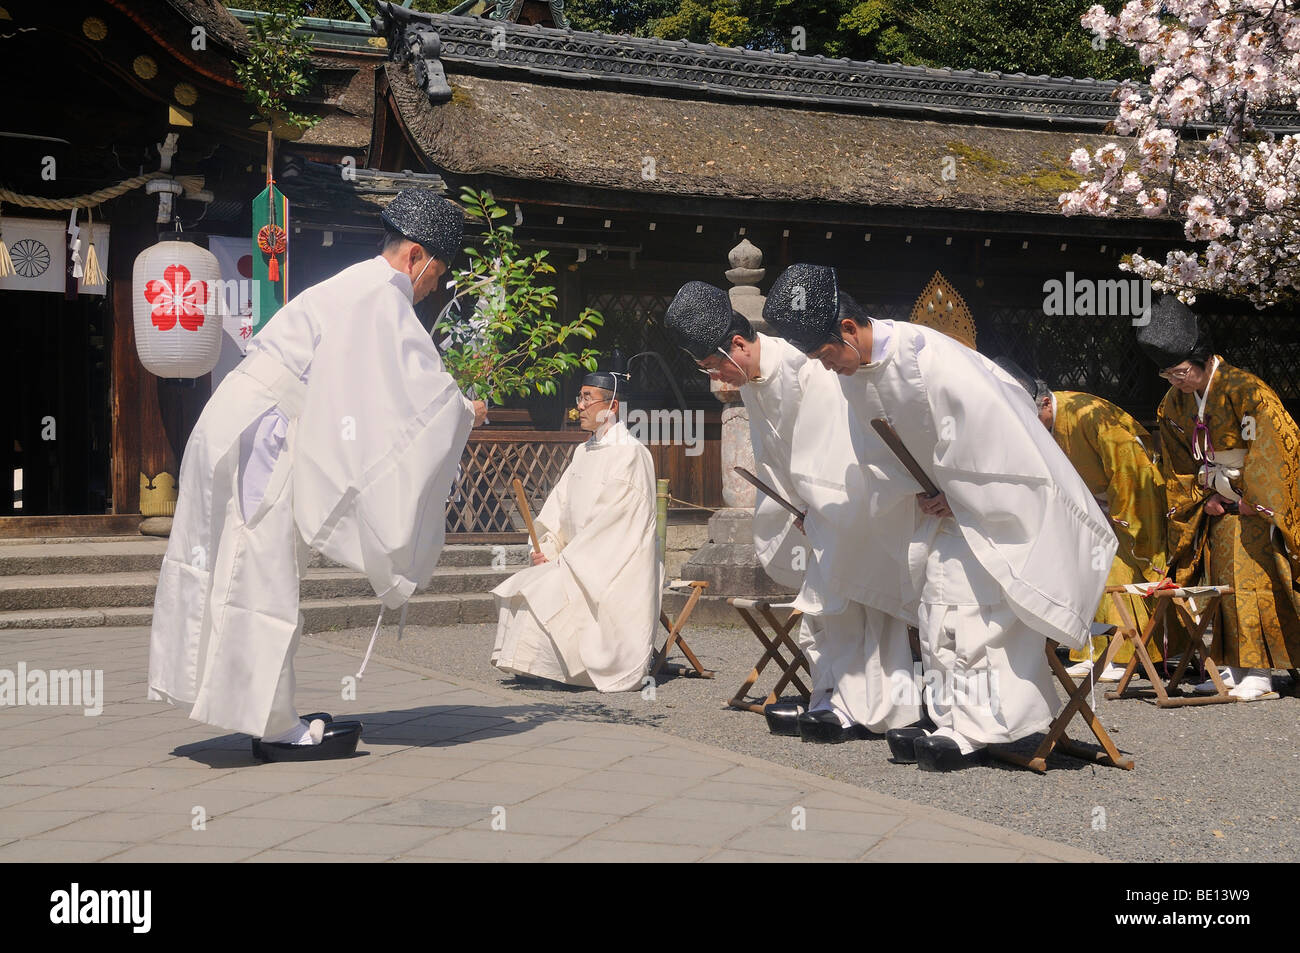 Lo Shintoismo sacerdote a purgation con sventolando rami e piegando i sacerdoti, santuario festival durante la fioritura dei ciliegi a Hirano Shr Foto Stock